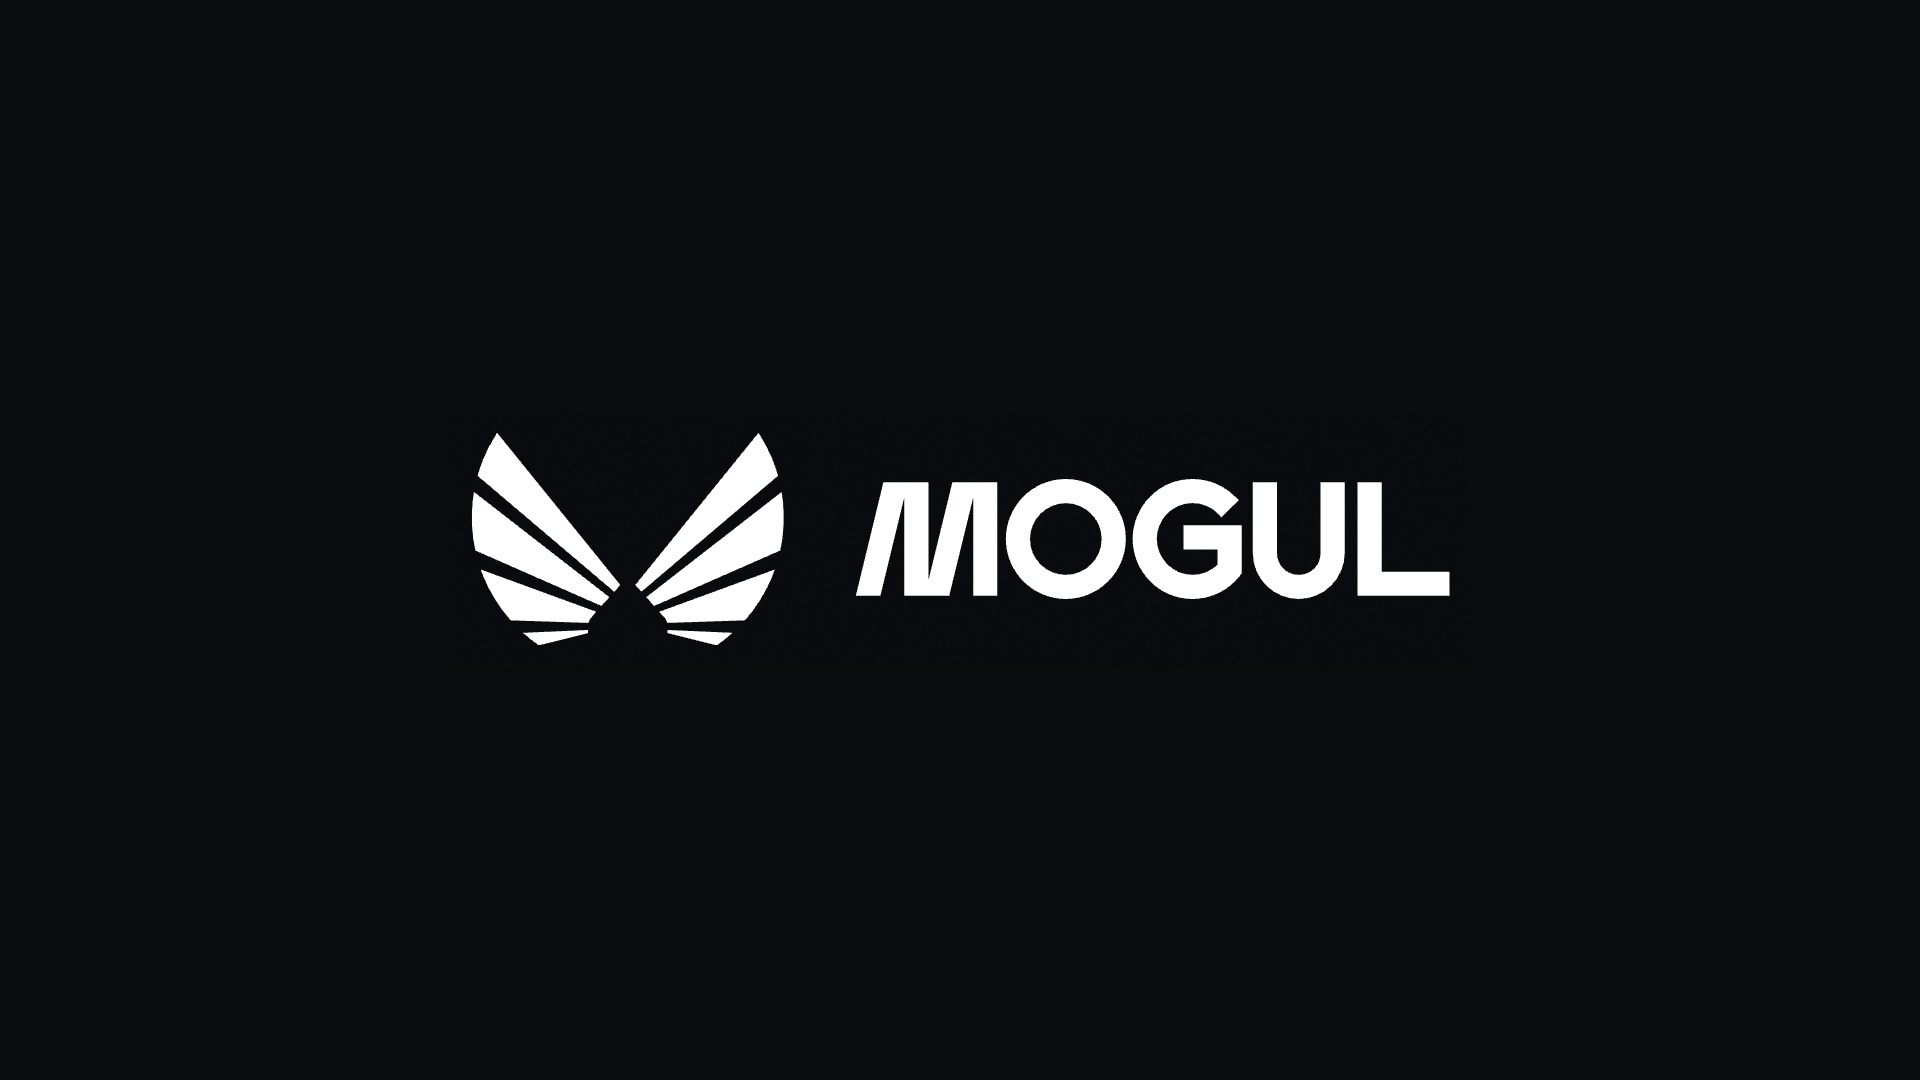 mogul club、不動産投資をより身近なものにするため360万ドルを調達